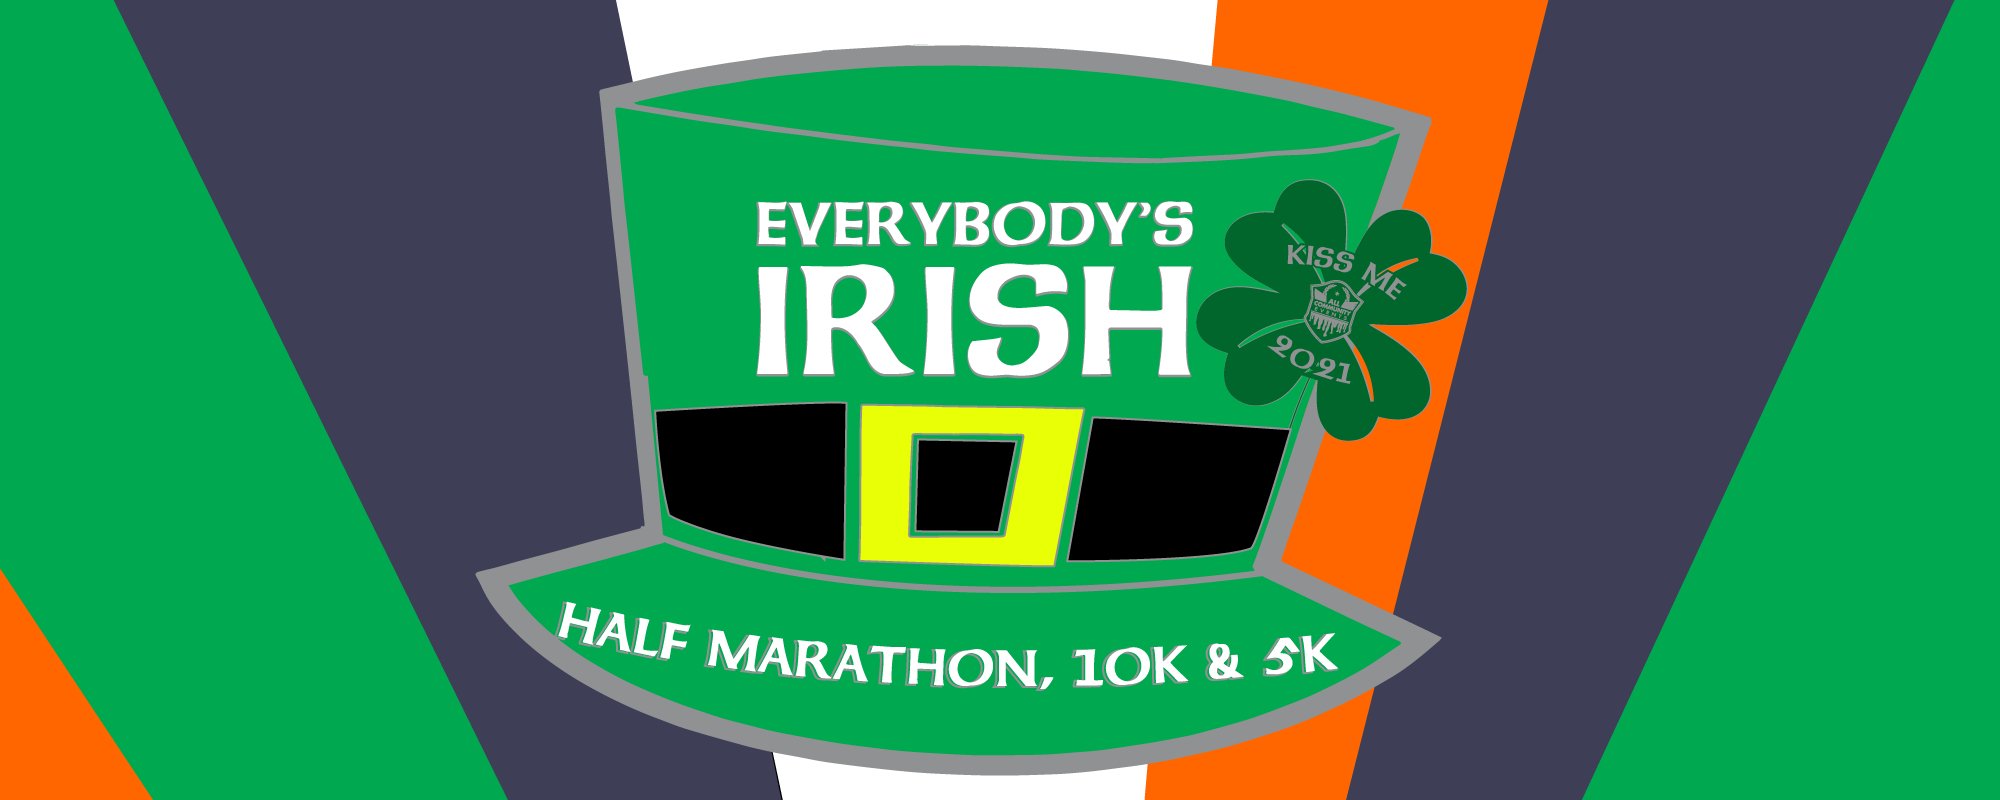 Everybody's Irish 5k